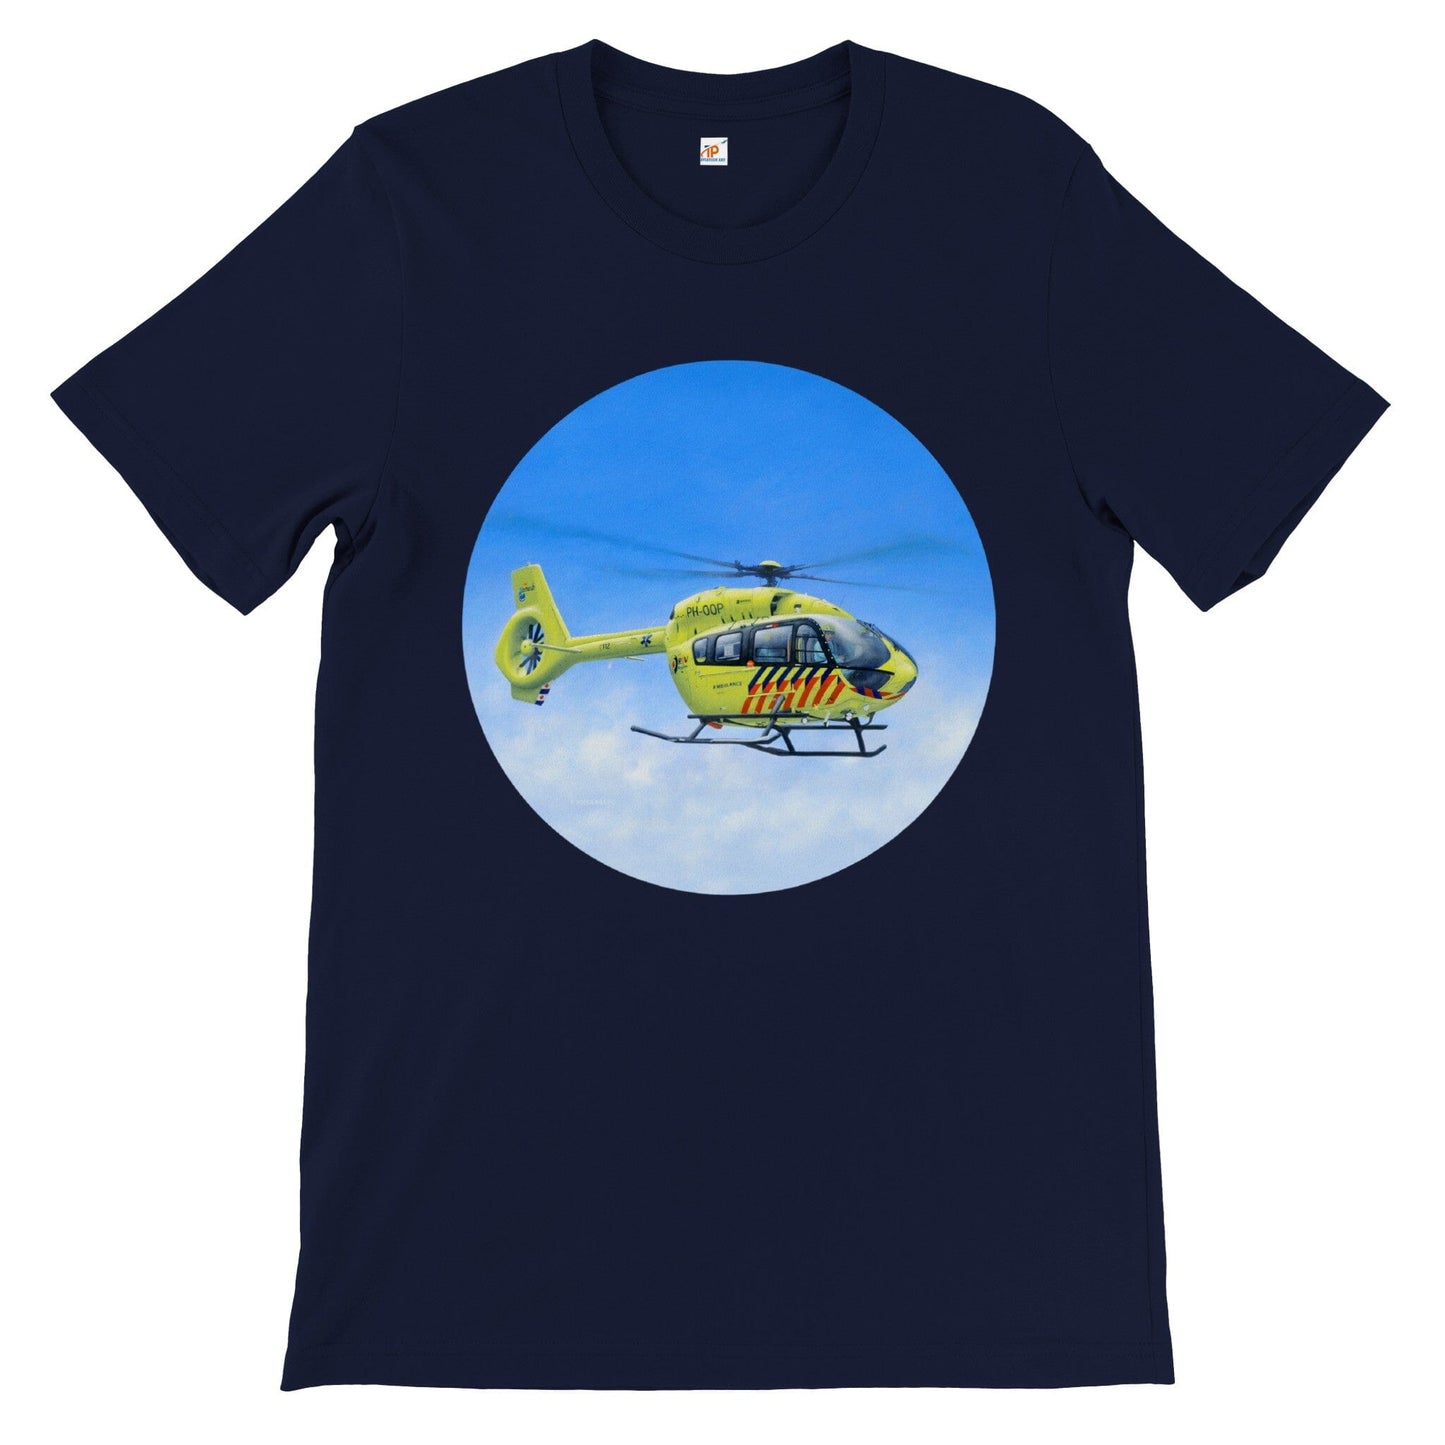 Peter Hoogenberg - T-shirt - Ambulance Helicopter Wadden Islands - Premium Unisex T-shirt TP Aviation Art Navy S 